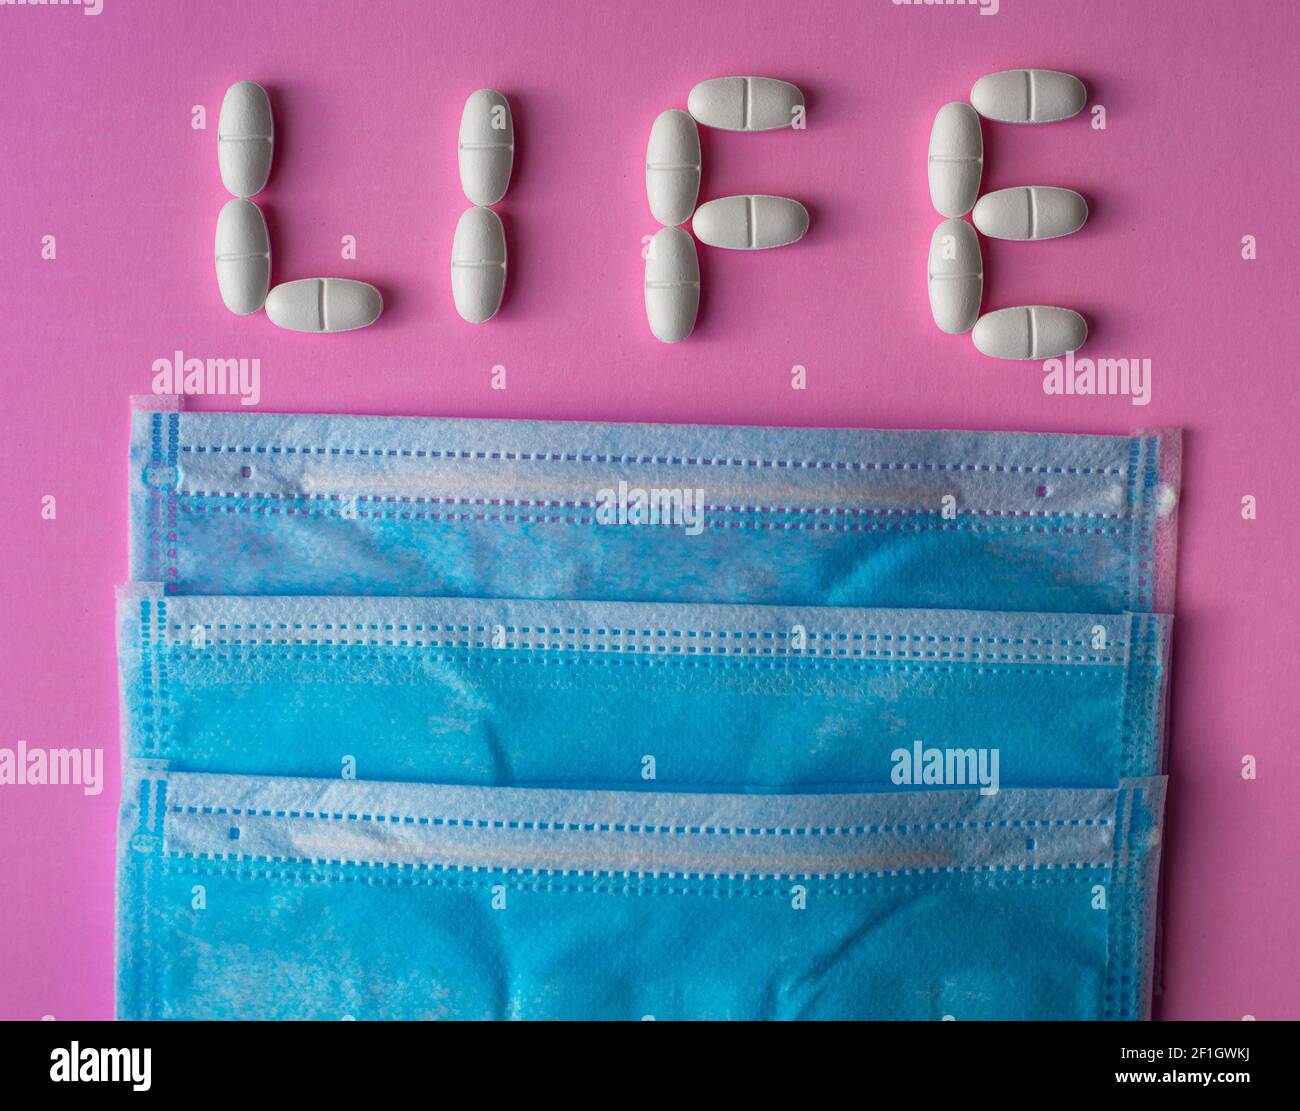 Medizinische blaue Schutzmasken und weiße, große Pillen, Tabletten oder Vitamine mit dem Text Leben auf einem rosa Hintergrund angeordnet Stockfoto